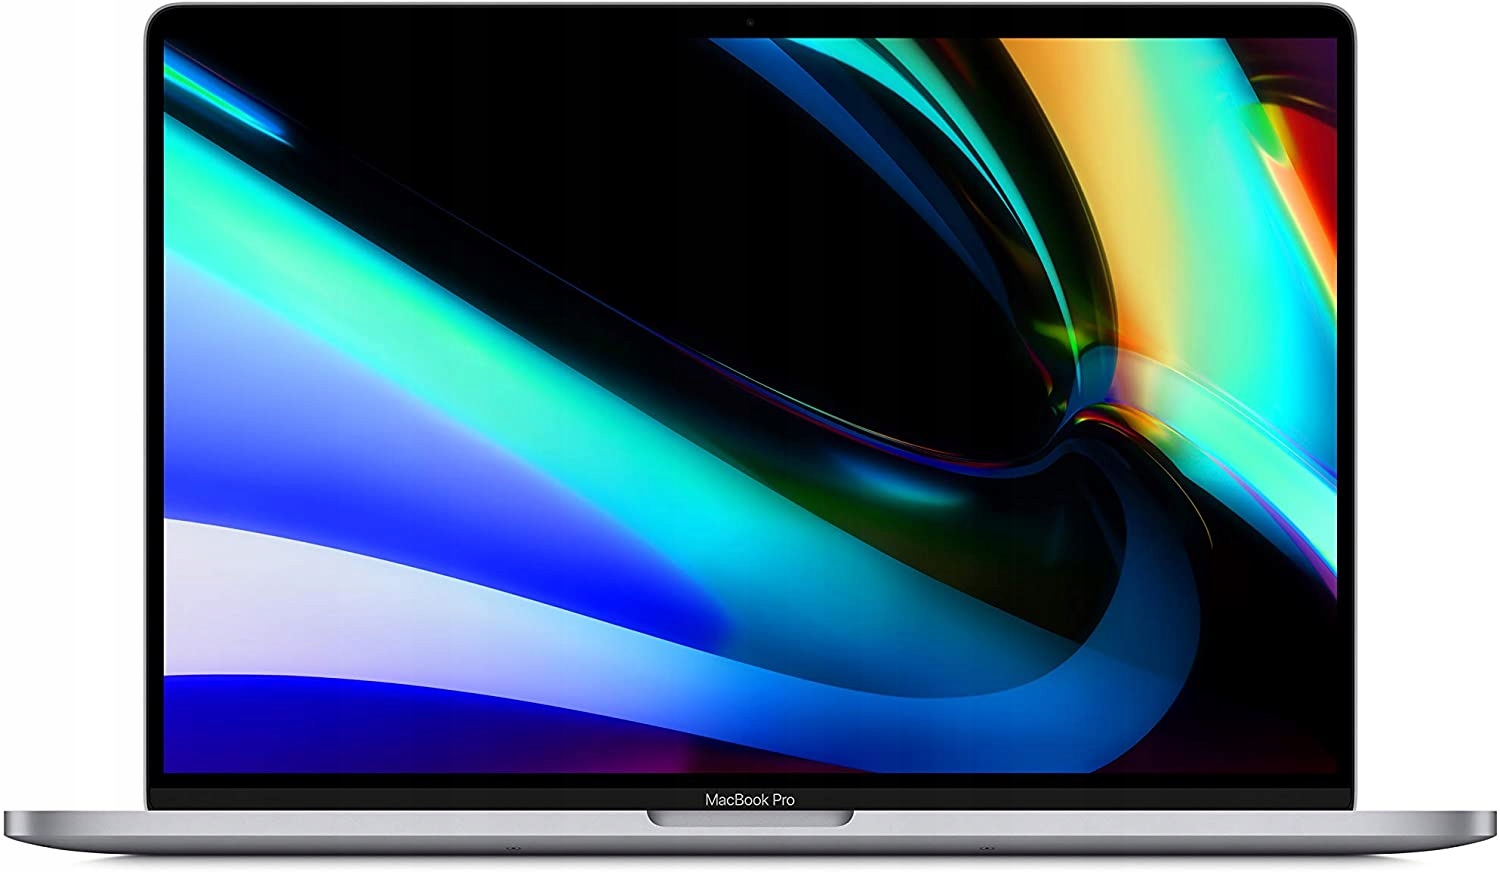 MacBook Pro 15 Touchbar i7 2.6 32GB 1024GB Szary 2019 Model MV902LL/A